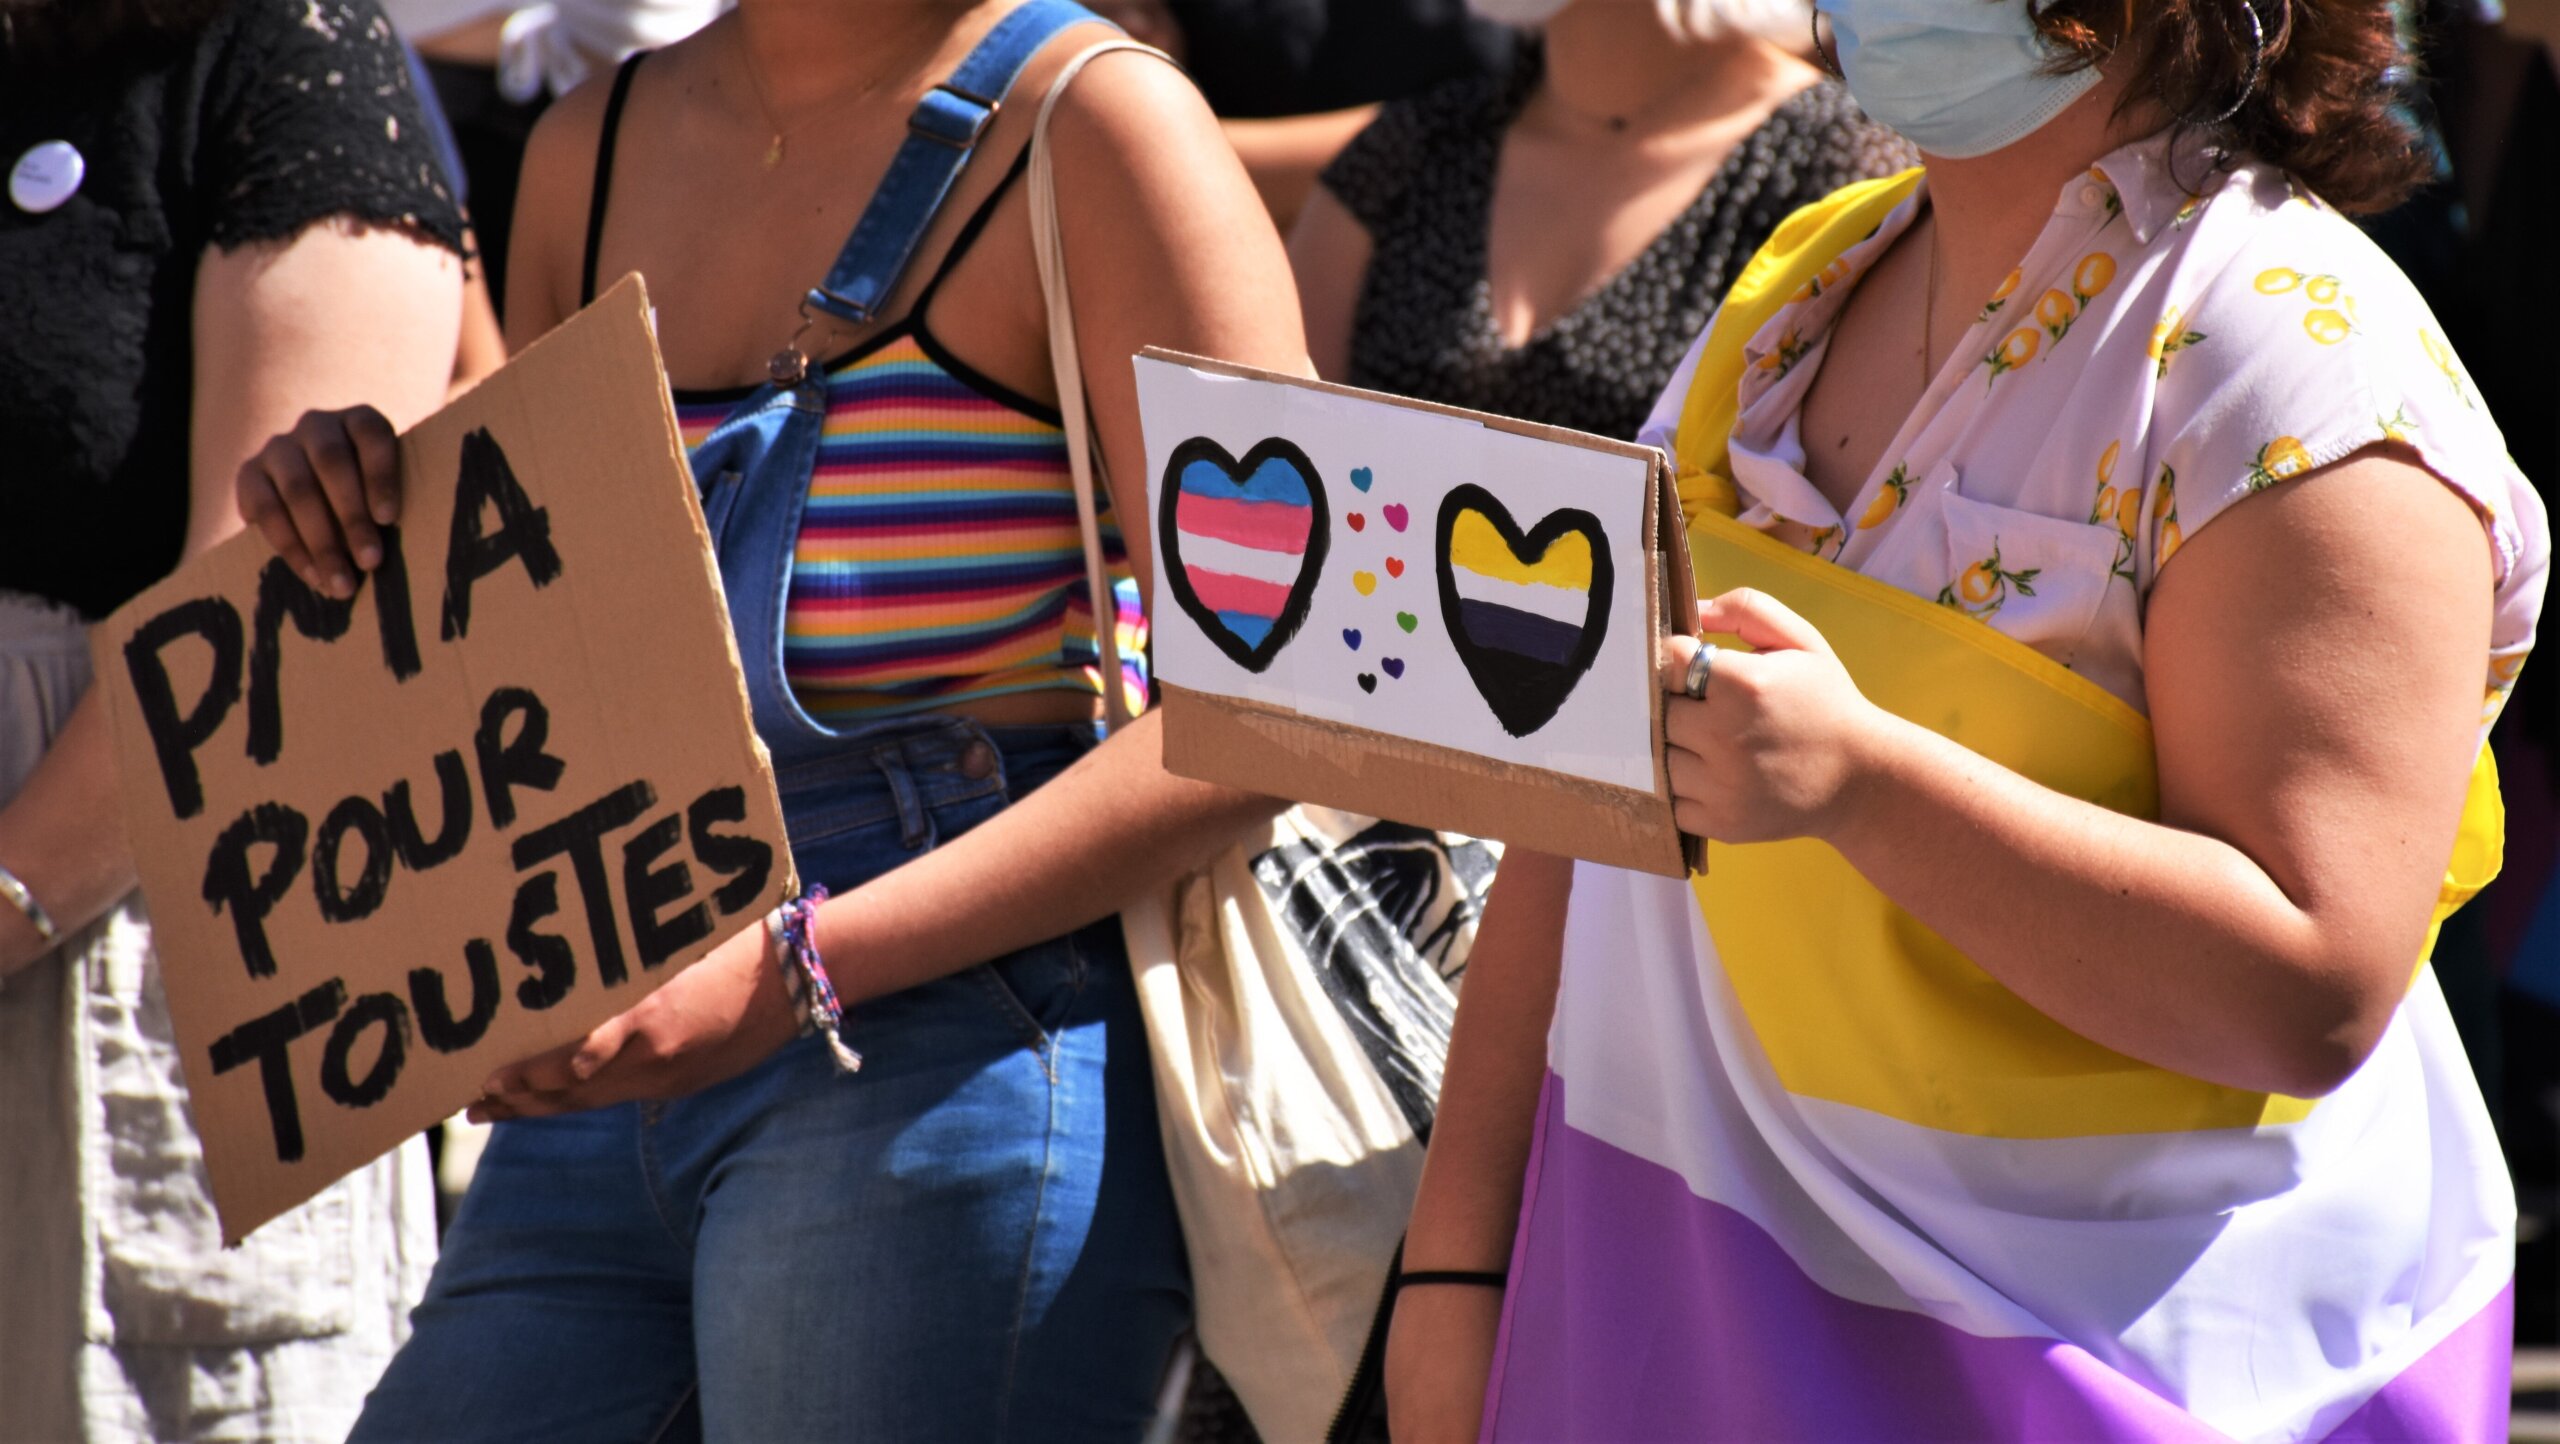 A Lyon, l’extrême droite attaque la manifestation pour la fierté lesbienne